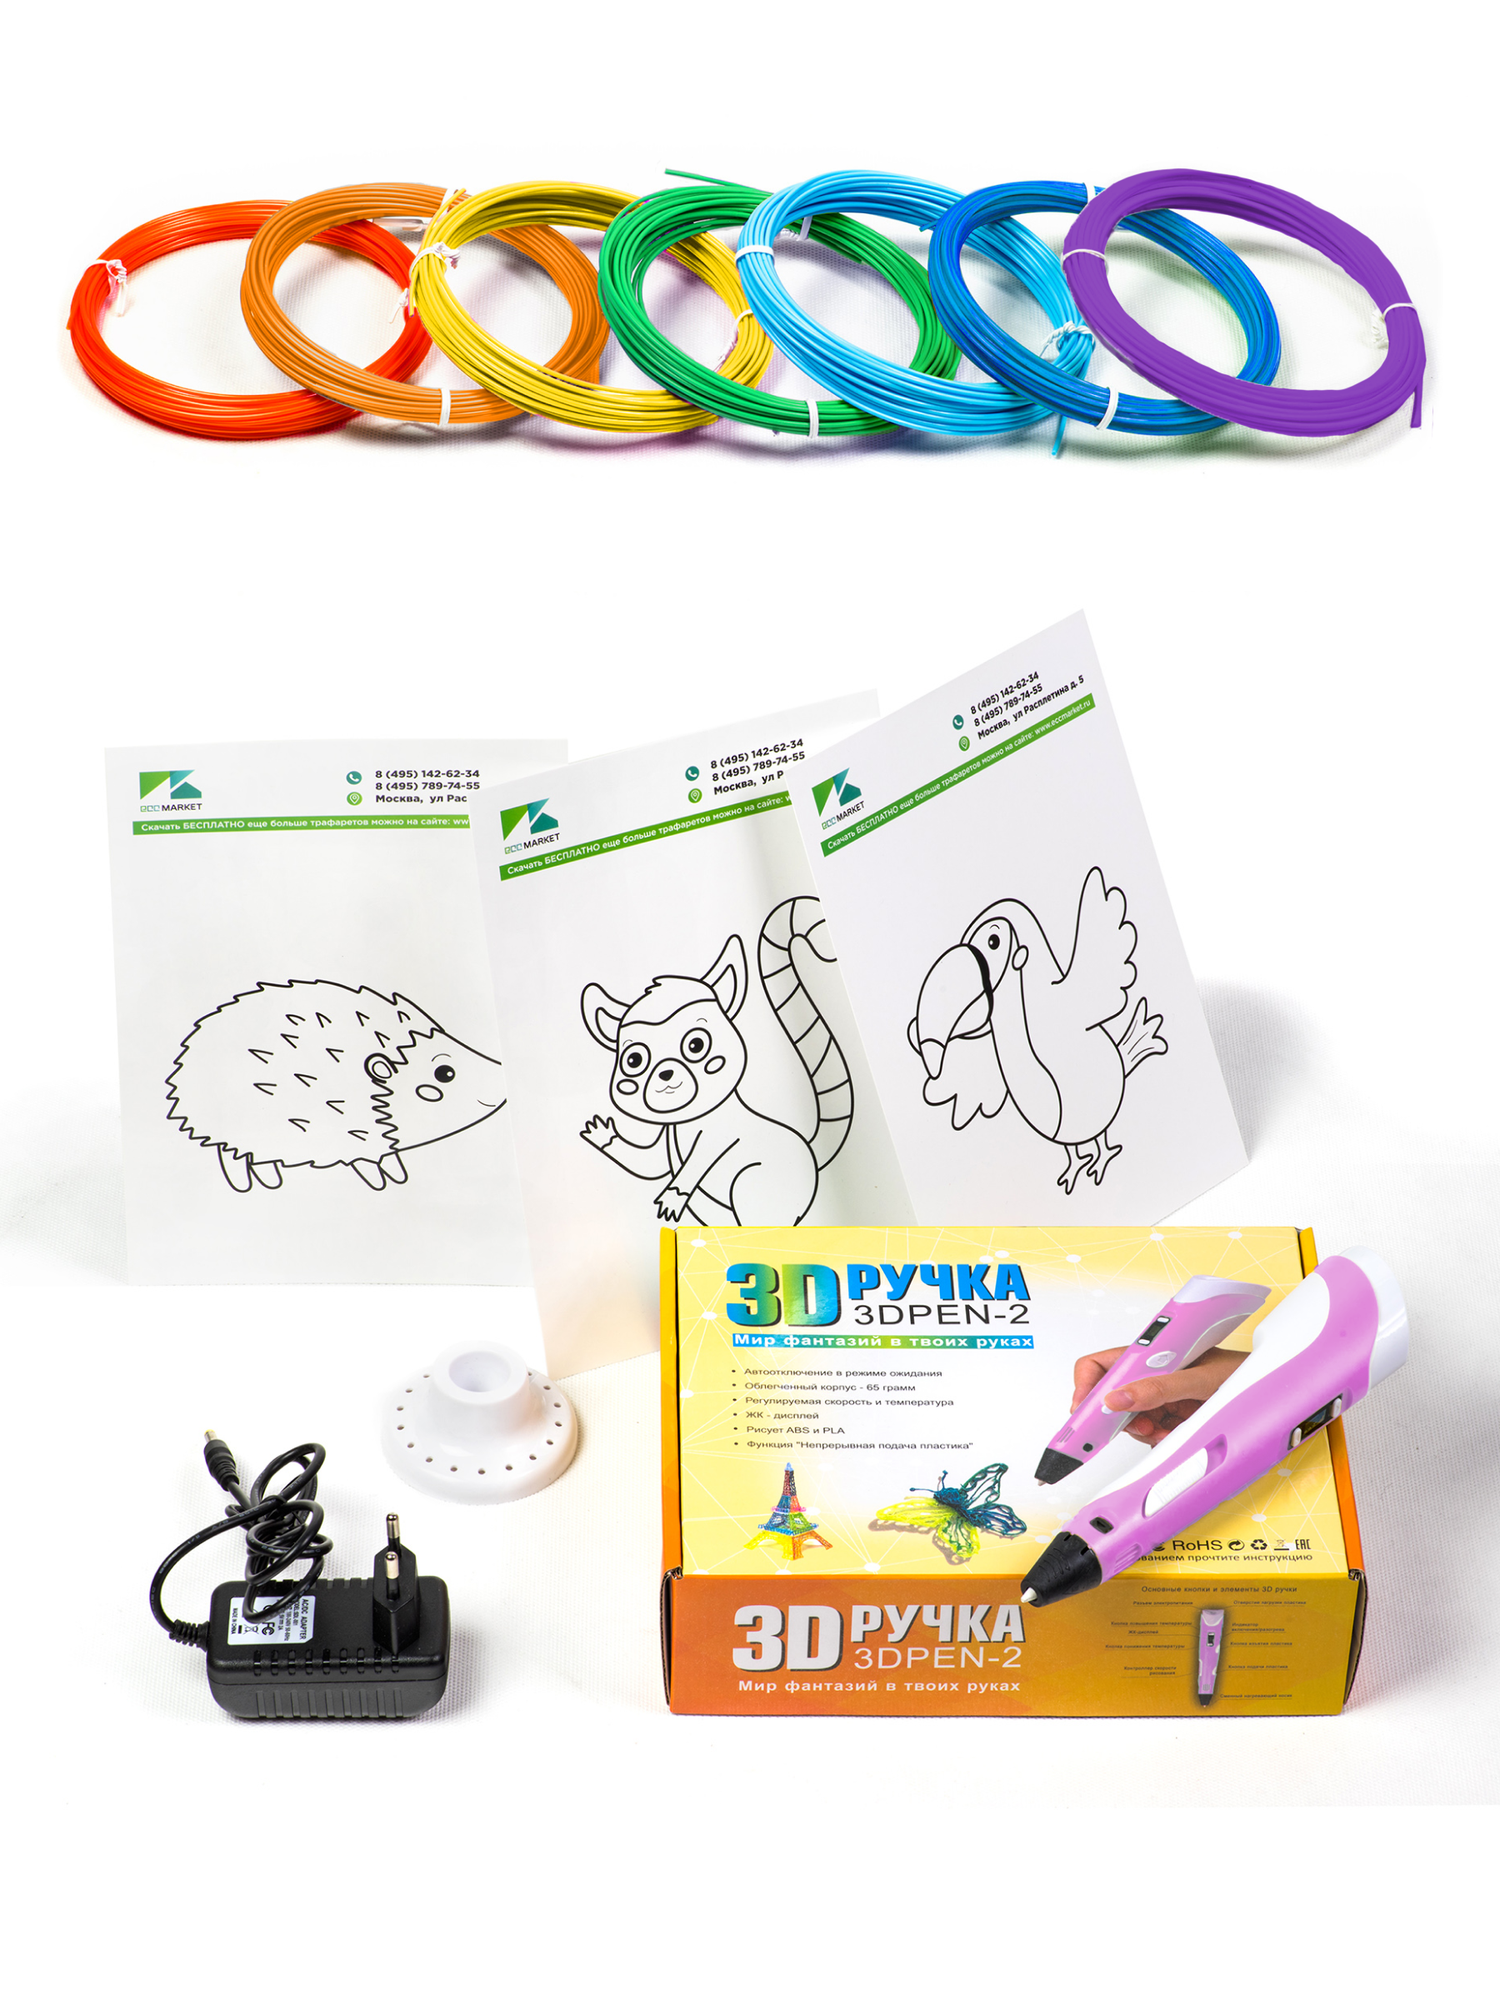 3D ручка 3DPEN-2 с подарочным набором пластика 70 метров и трафаретами для 3д рисования, розовая